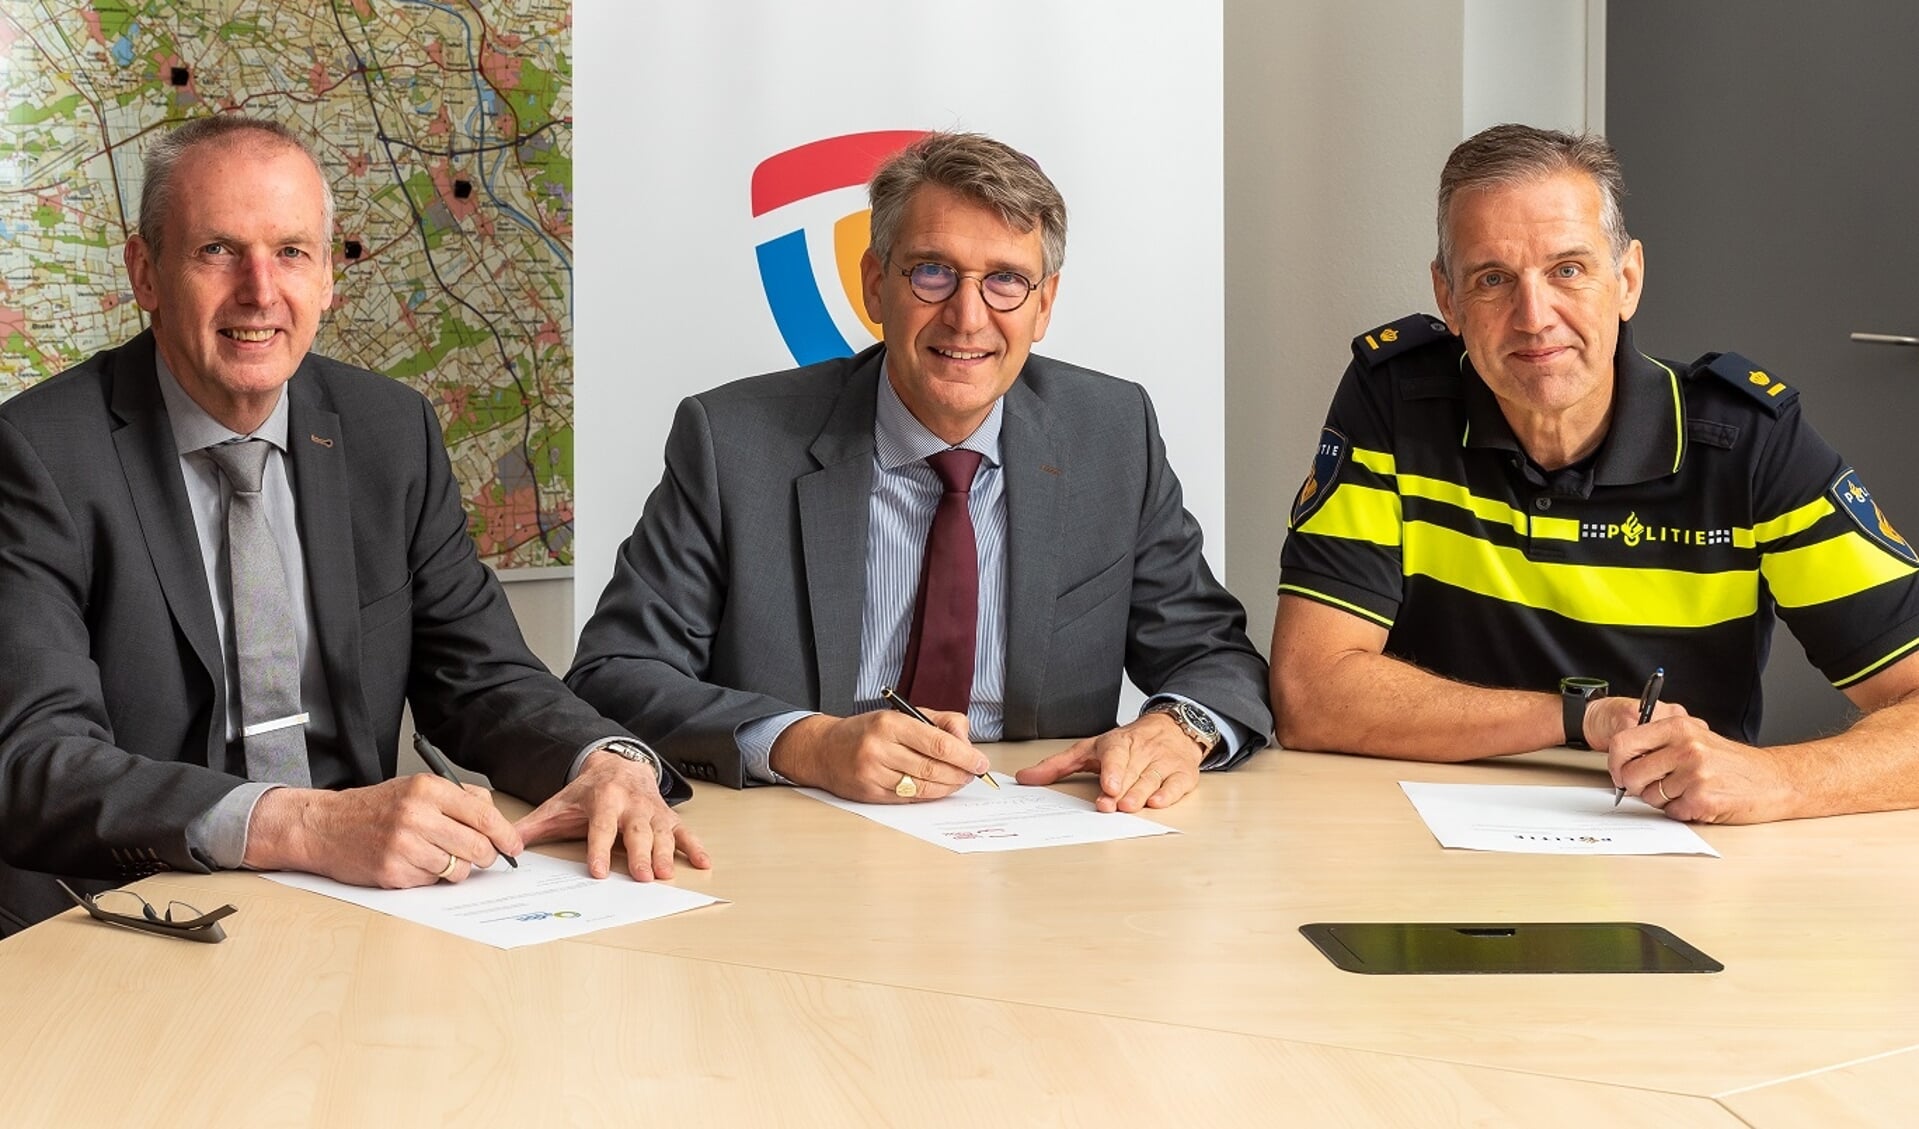 V.l.n.r: Jan Lenssen, directeur Omgevingsdienst Brabant Noord, Wim Hillenaar, waarnemend burgemeester Land van Cuijk, Marc Plaum, teamchef politie Maas en Leijgraaf.